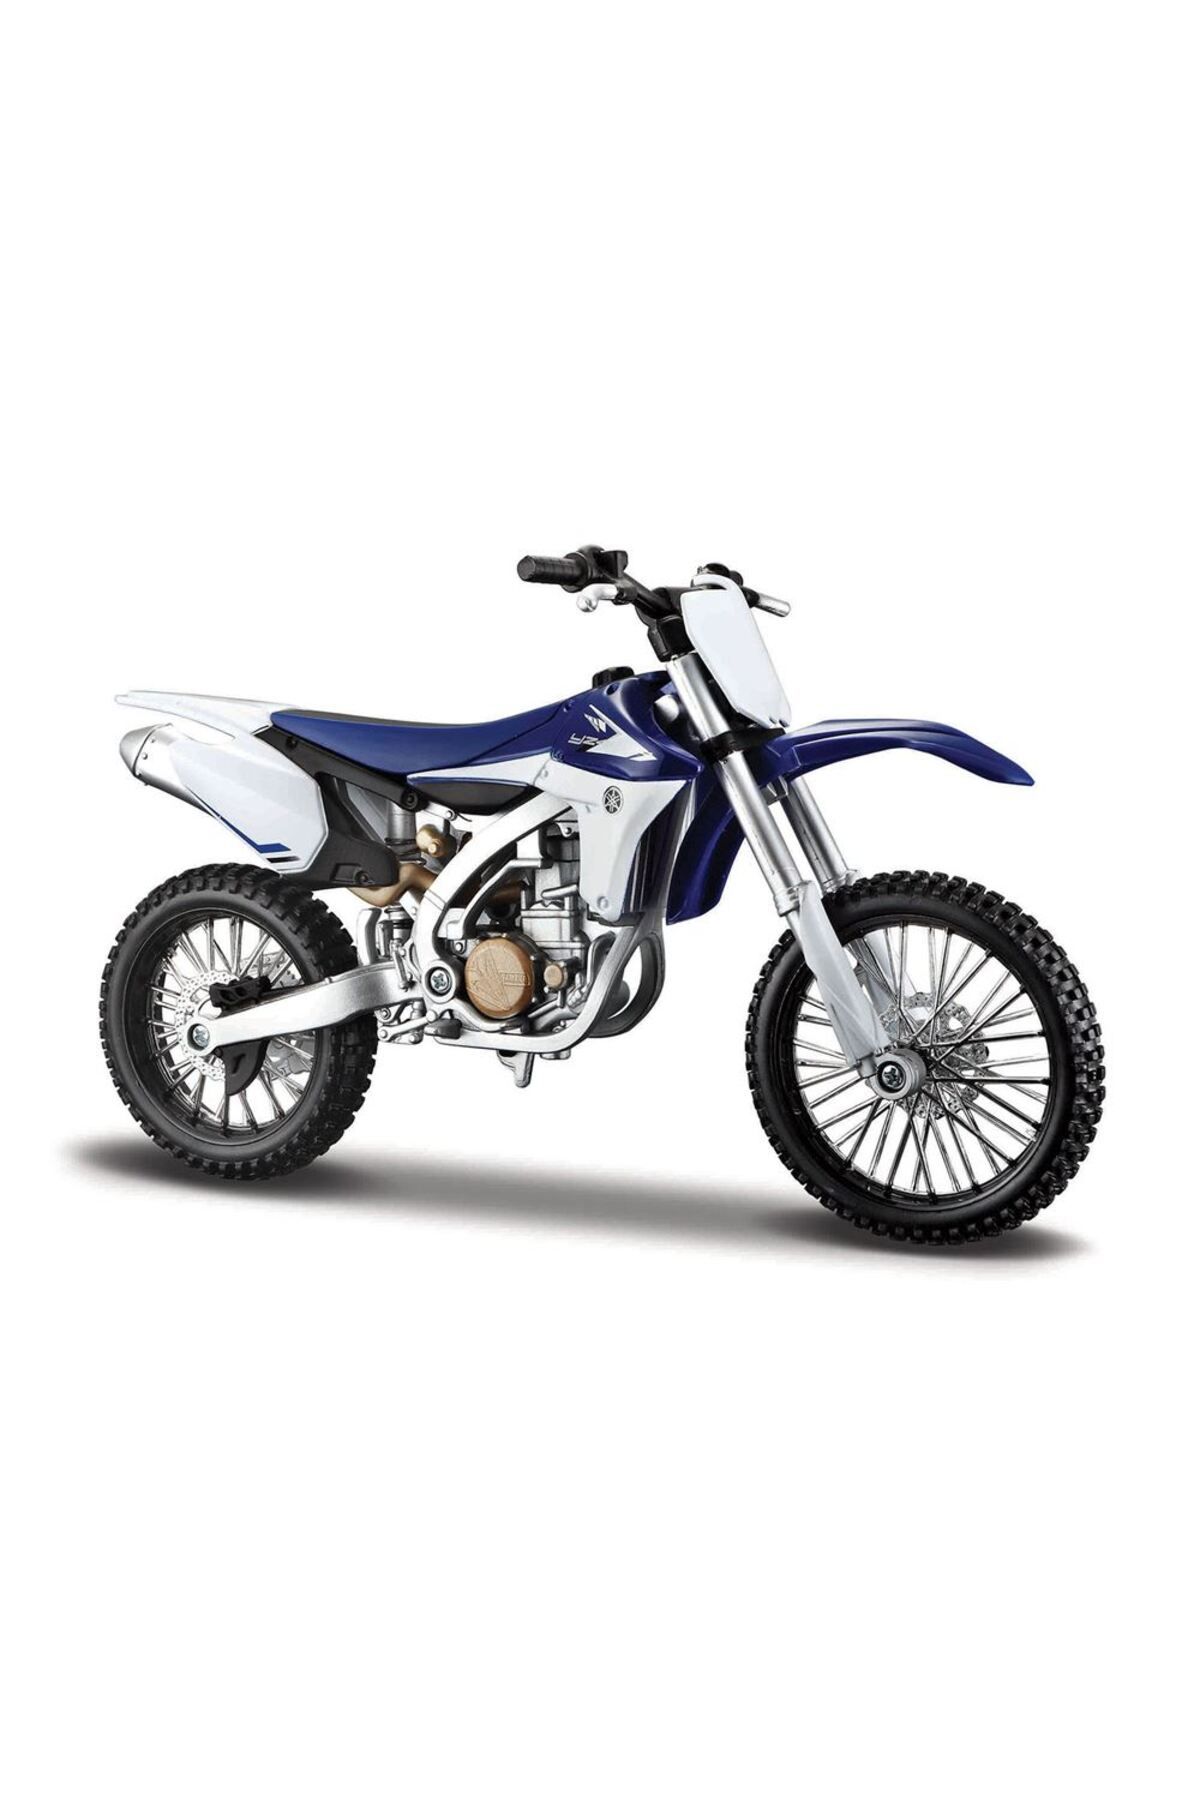 Maisto Yamaha Yz450f Model Kit Motosiklet 1/12 39195